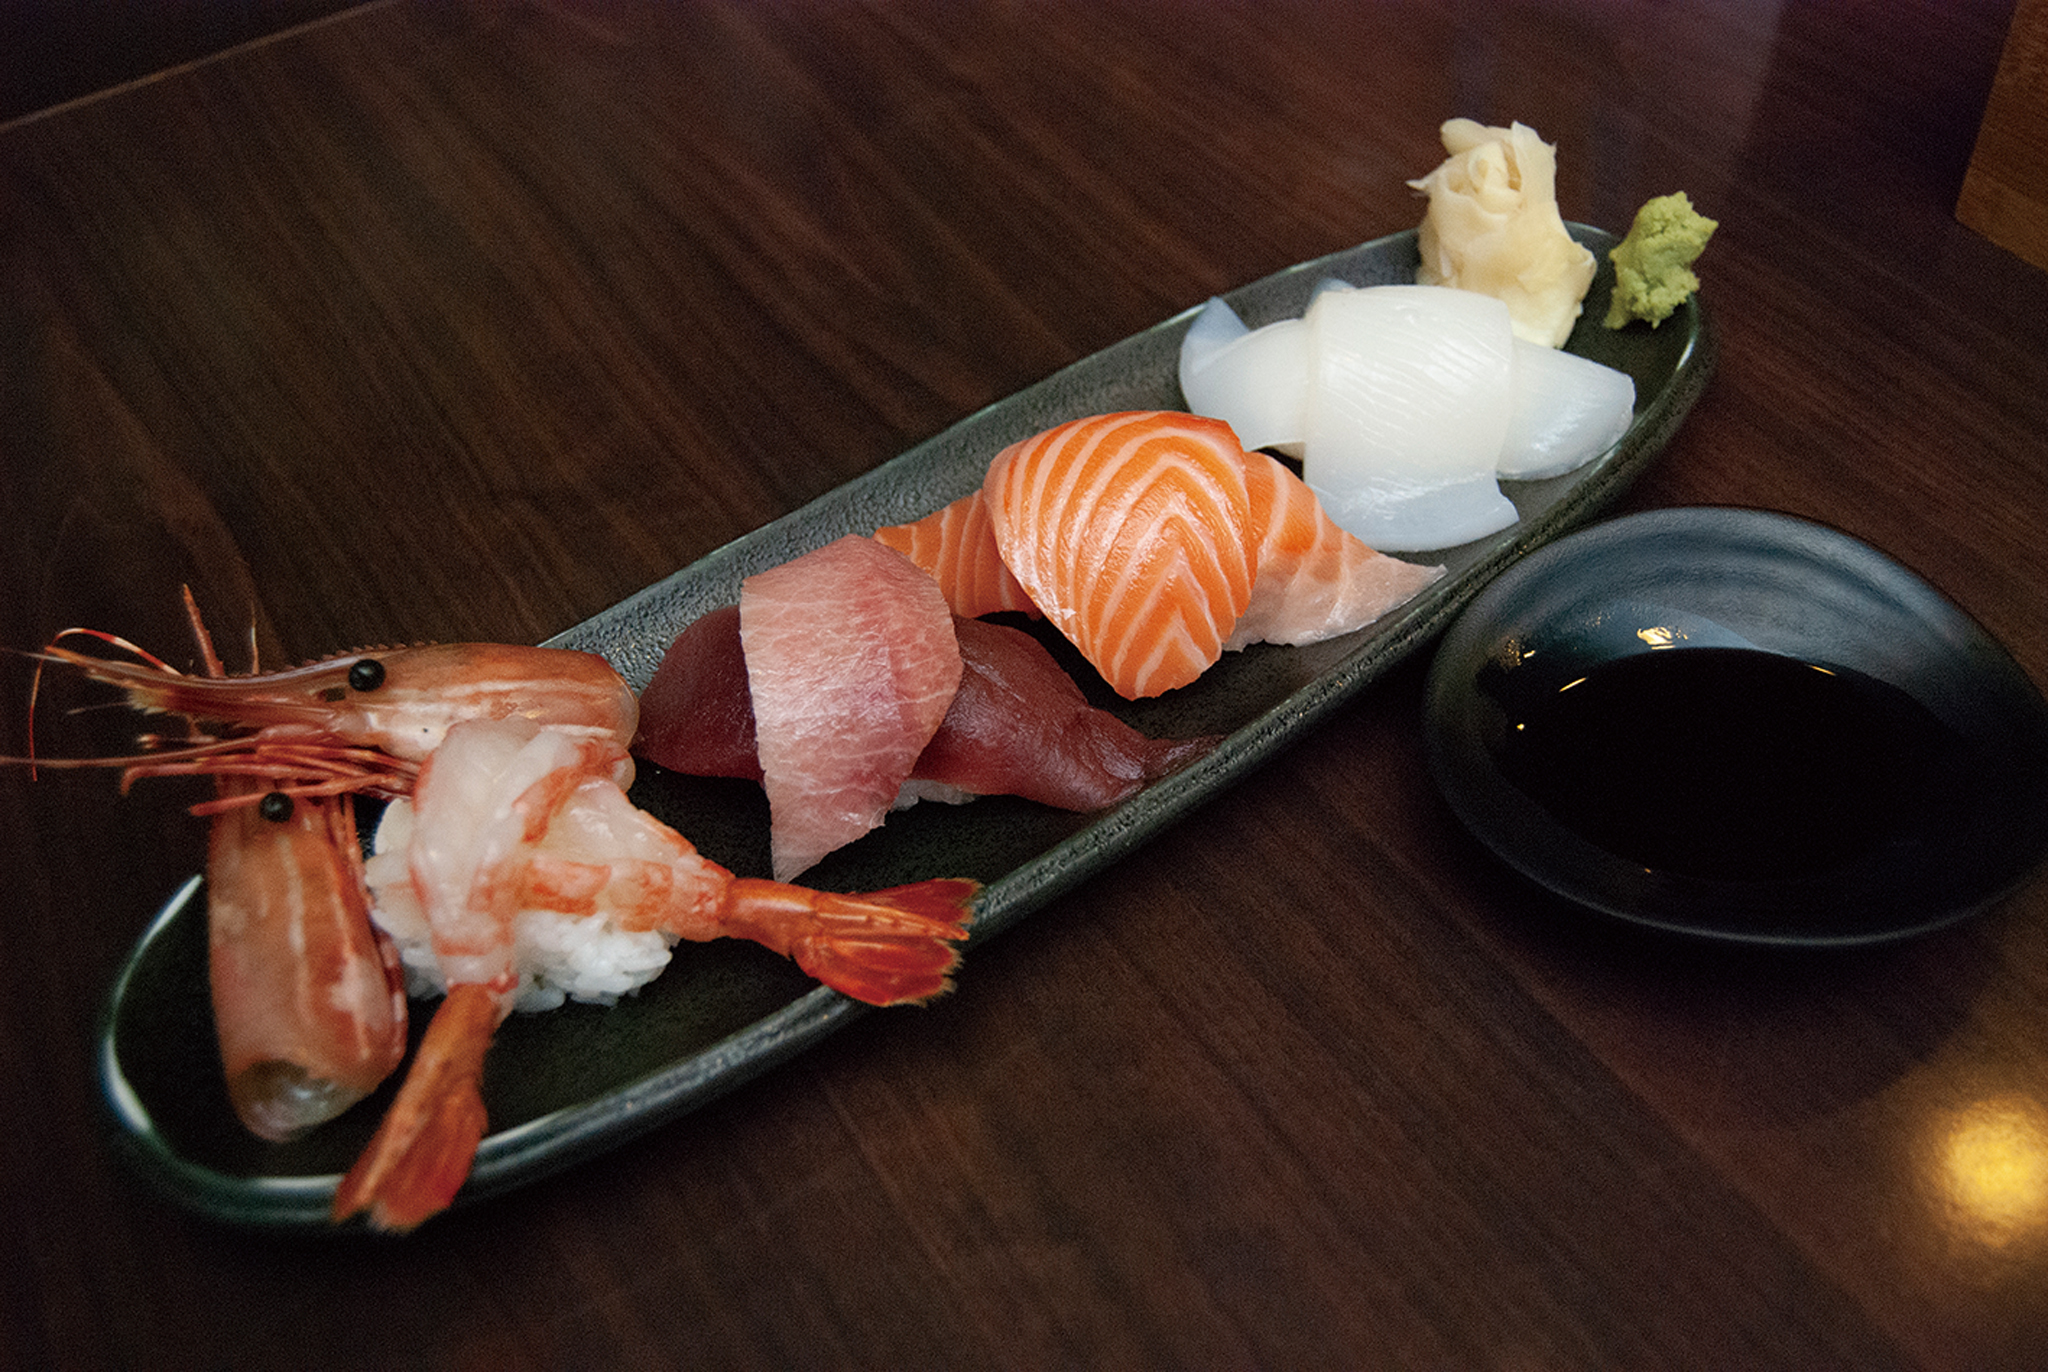 御三家的握壽司都會附上兩片生魚片，讓客人第一口先品嘗純生魚片的口感，第二口再品嘗握壽司。